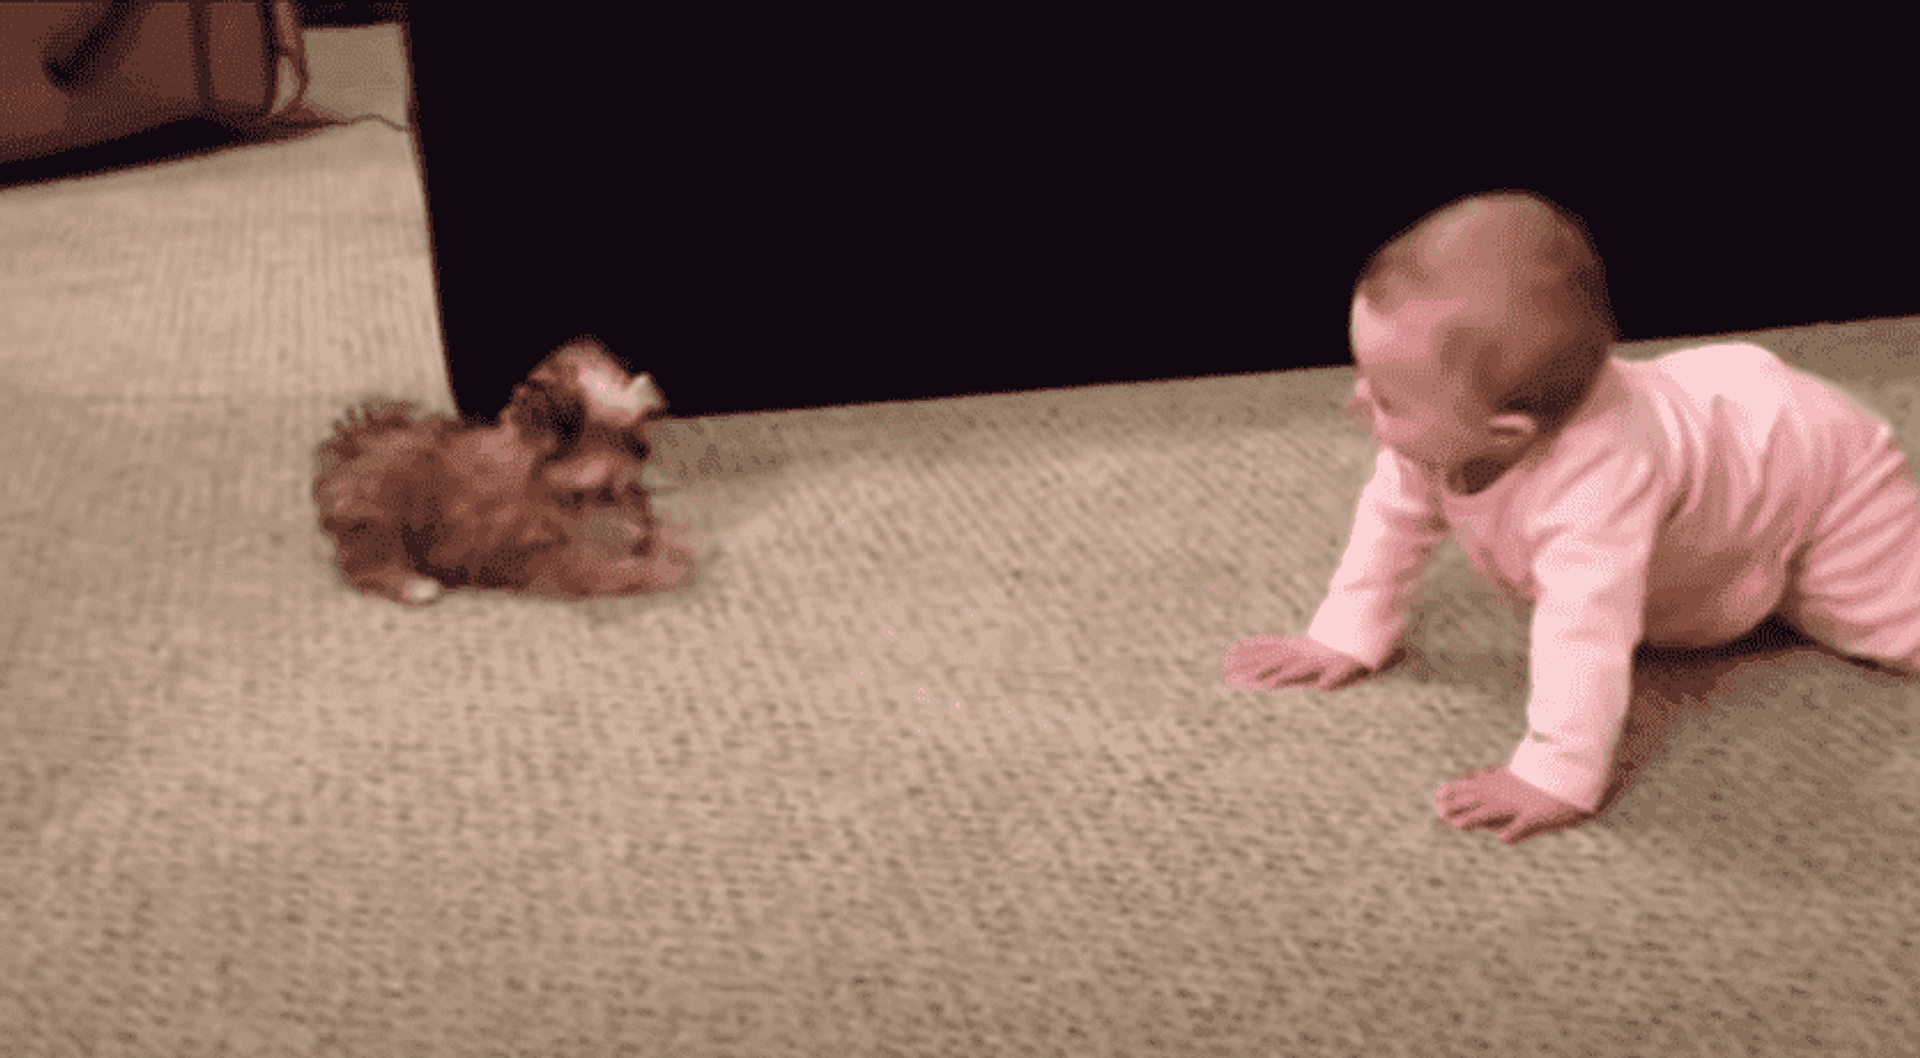 dziecko i pies